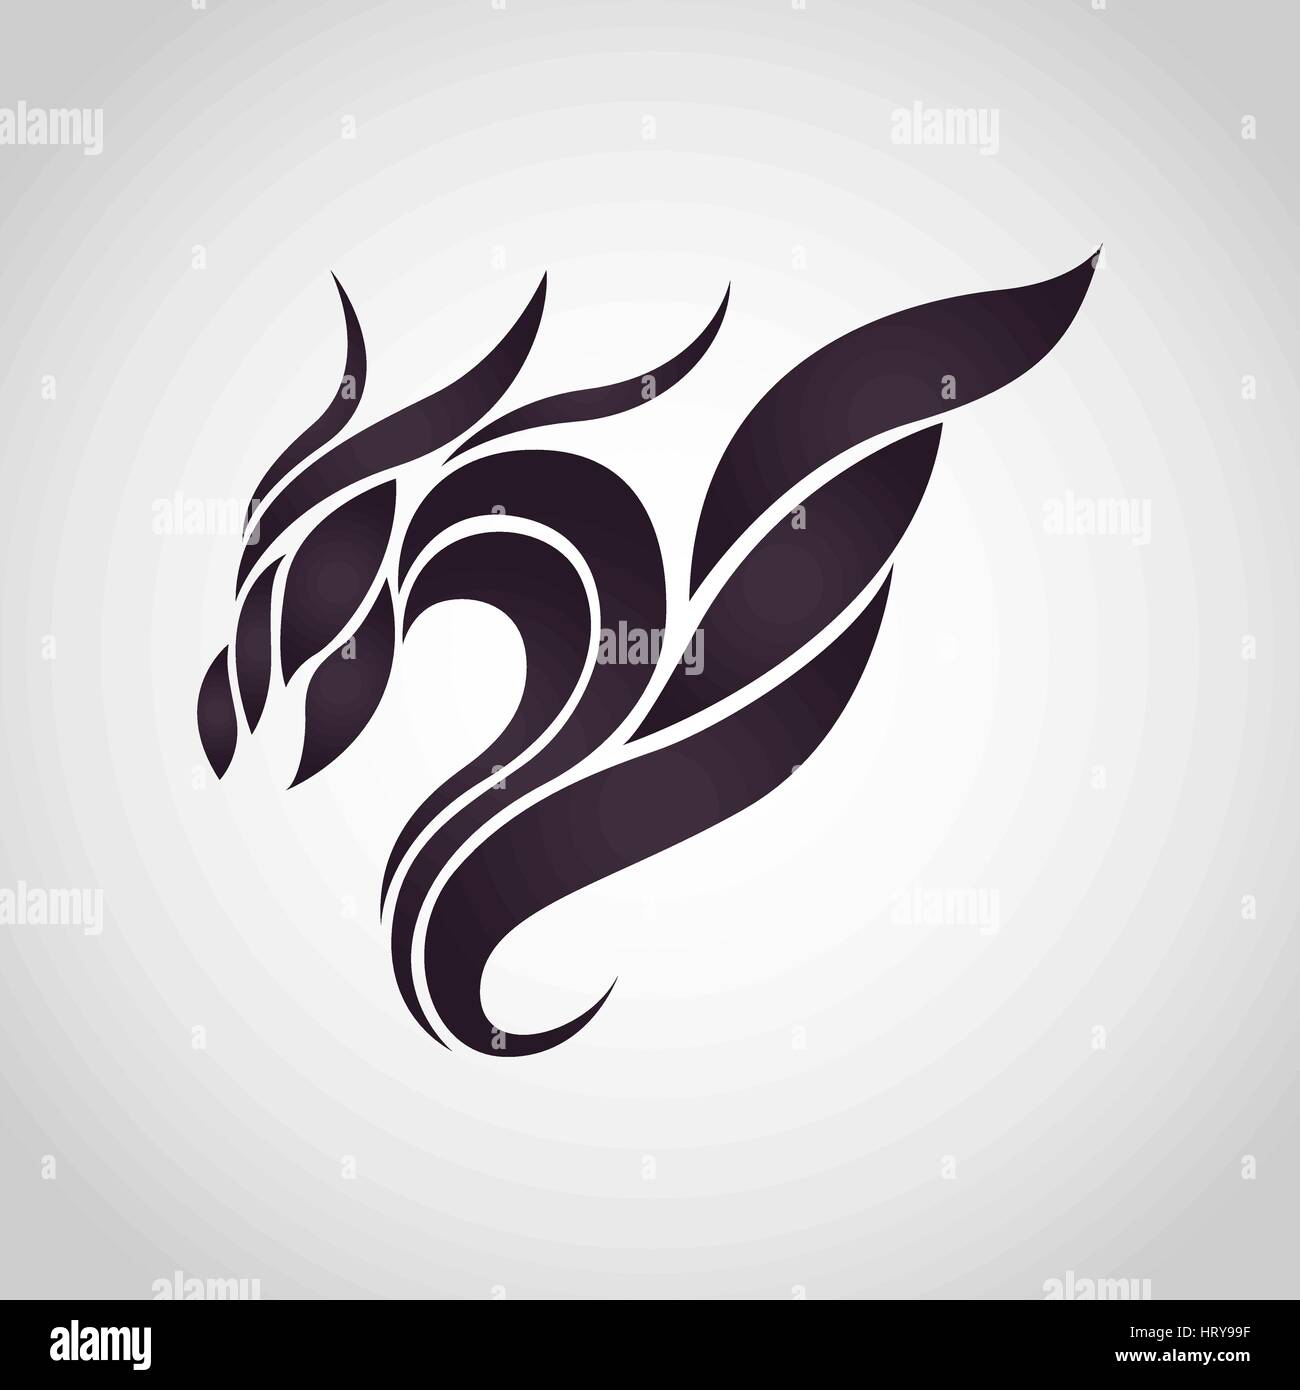 Dragon logo vector icon design Stock Vector Image & Art - Alamy